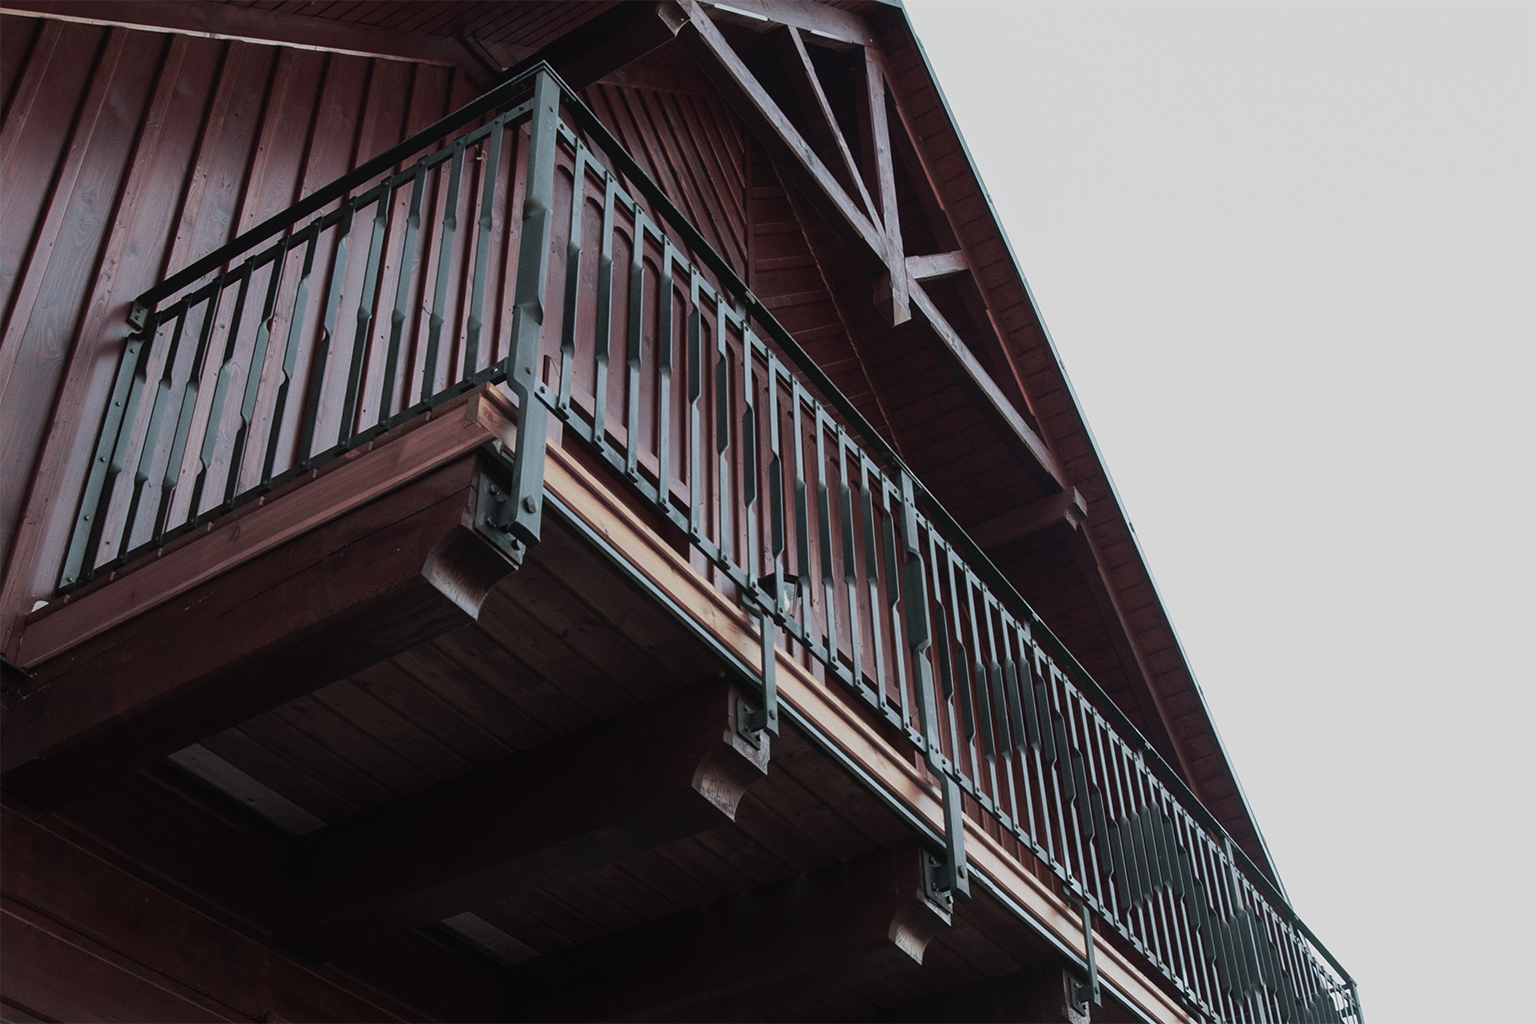 Kovaný balkon s terasou v Novém Hrozenkově: Proč nekopírujeme jiné autory